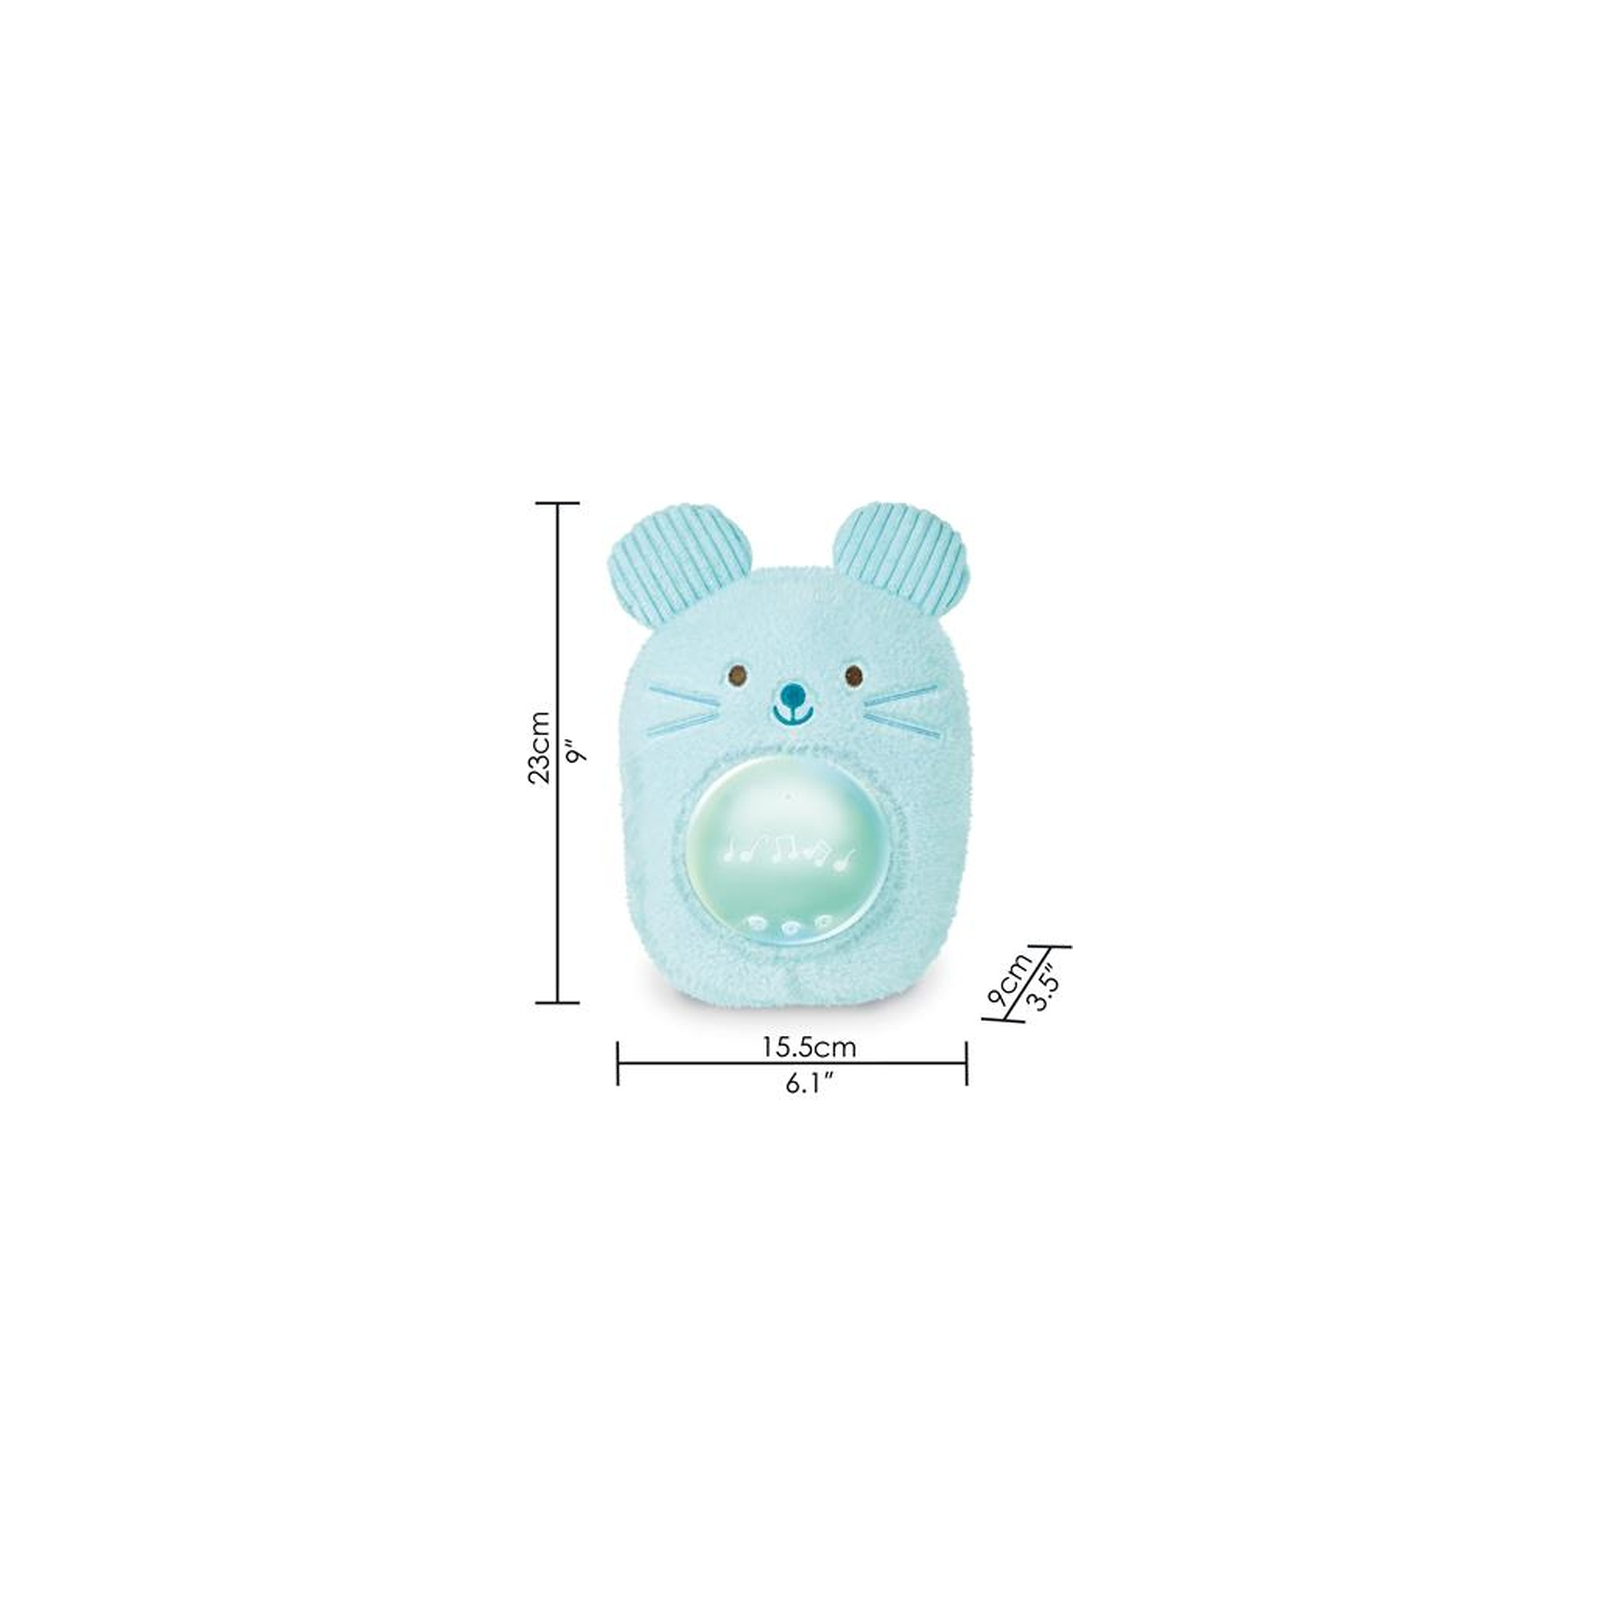 Ночник Hape Музыкальная игрушка-ночник Мышонок голубой (E0113) изображение 2